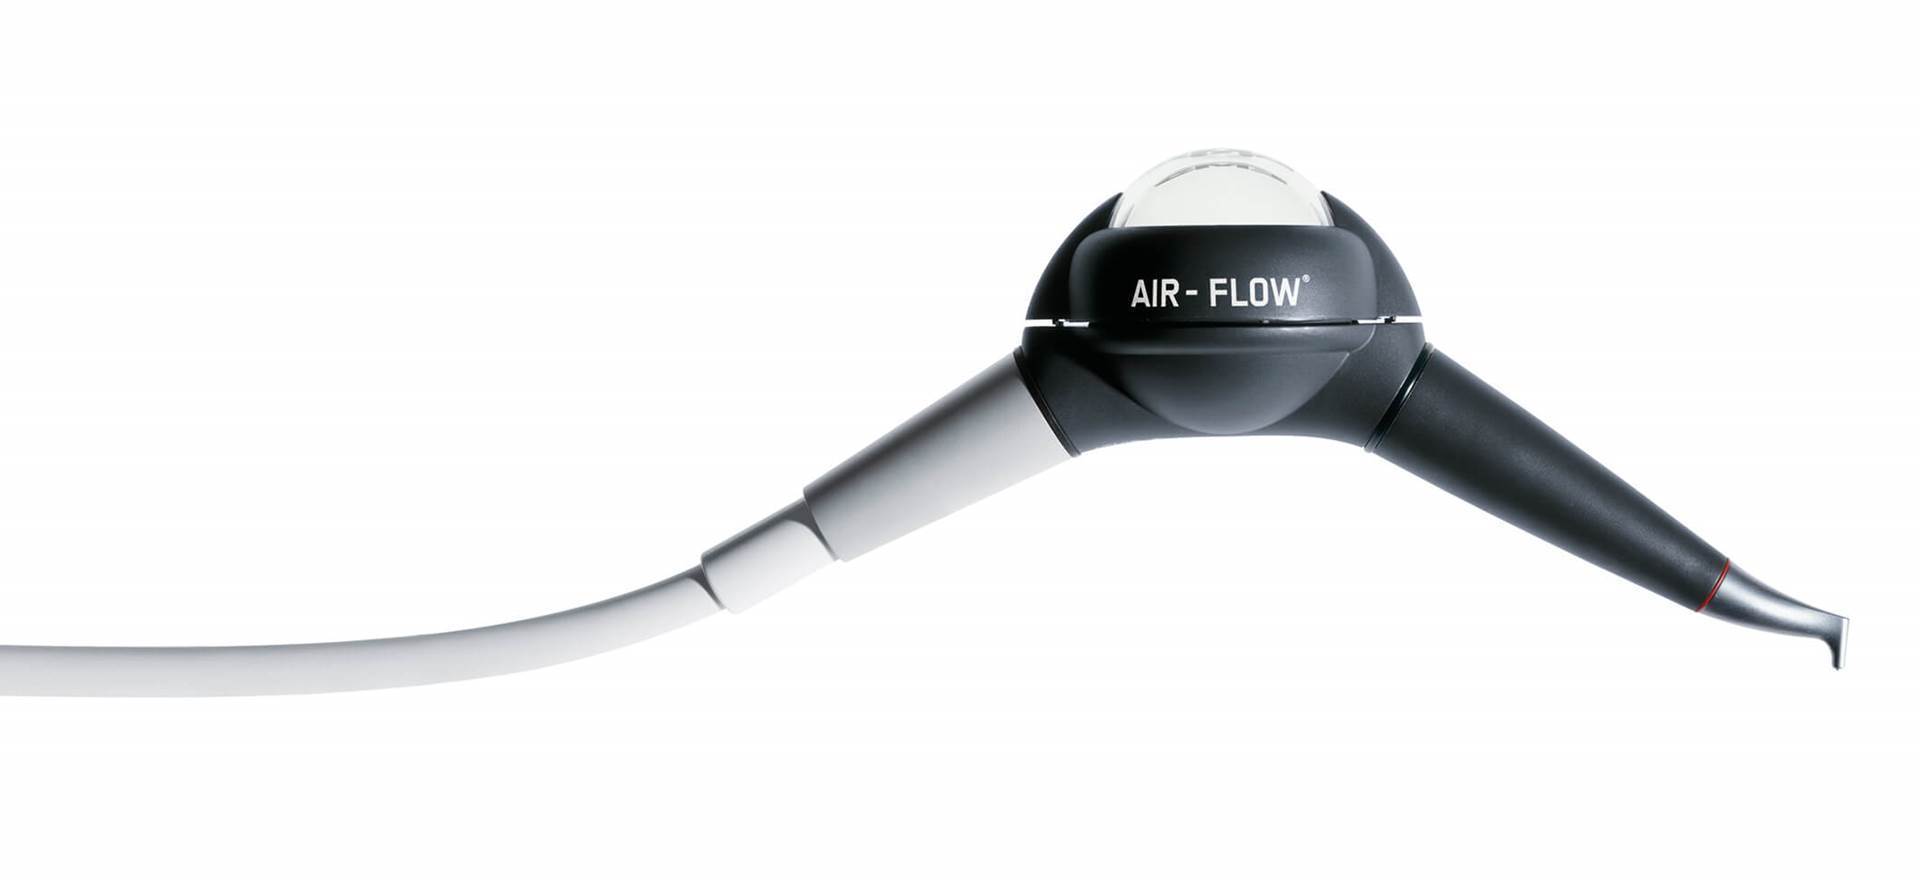 Airflow style pro. Air Flow Handy 2 наконечник. Аппарат Air Flow ems Handy 2. Аппарат пескоструйный Air-Flow Handy 2. Ems наконечник Air Flow Plus.